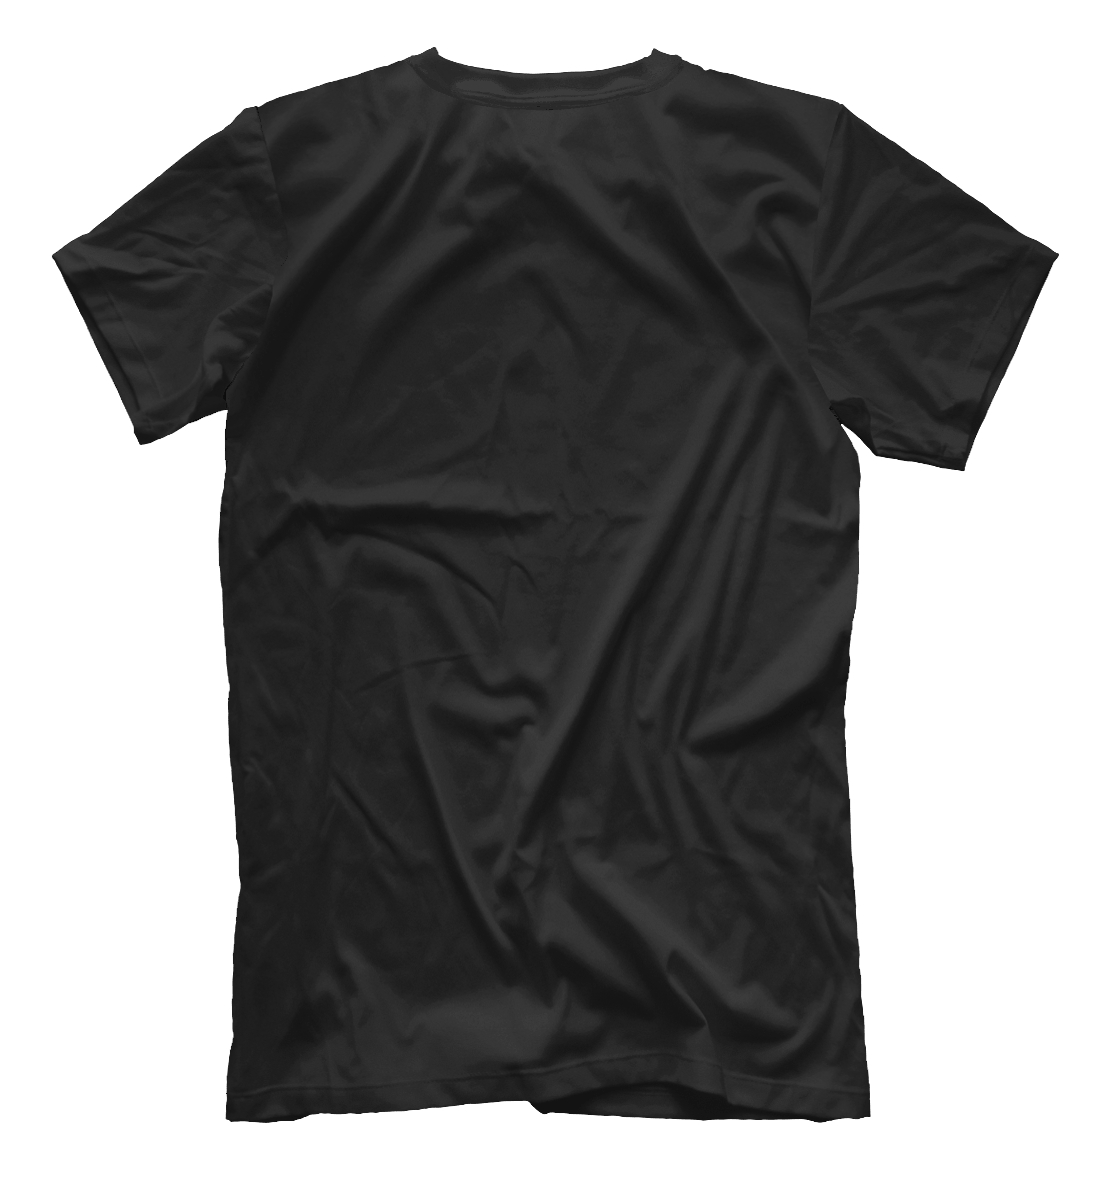 Мужская футболка с принтом Motivated (Black)  - фото 2-спина